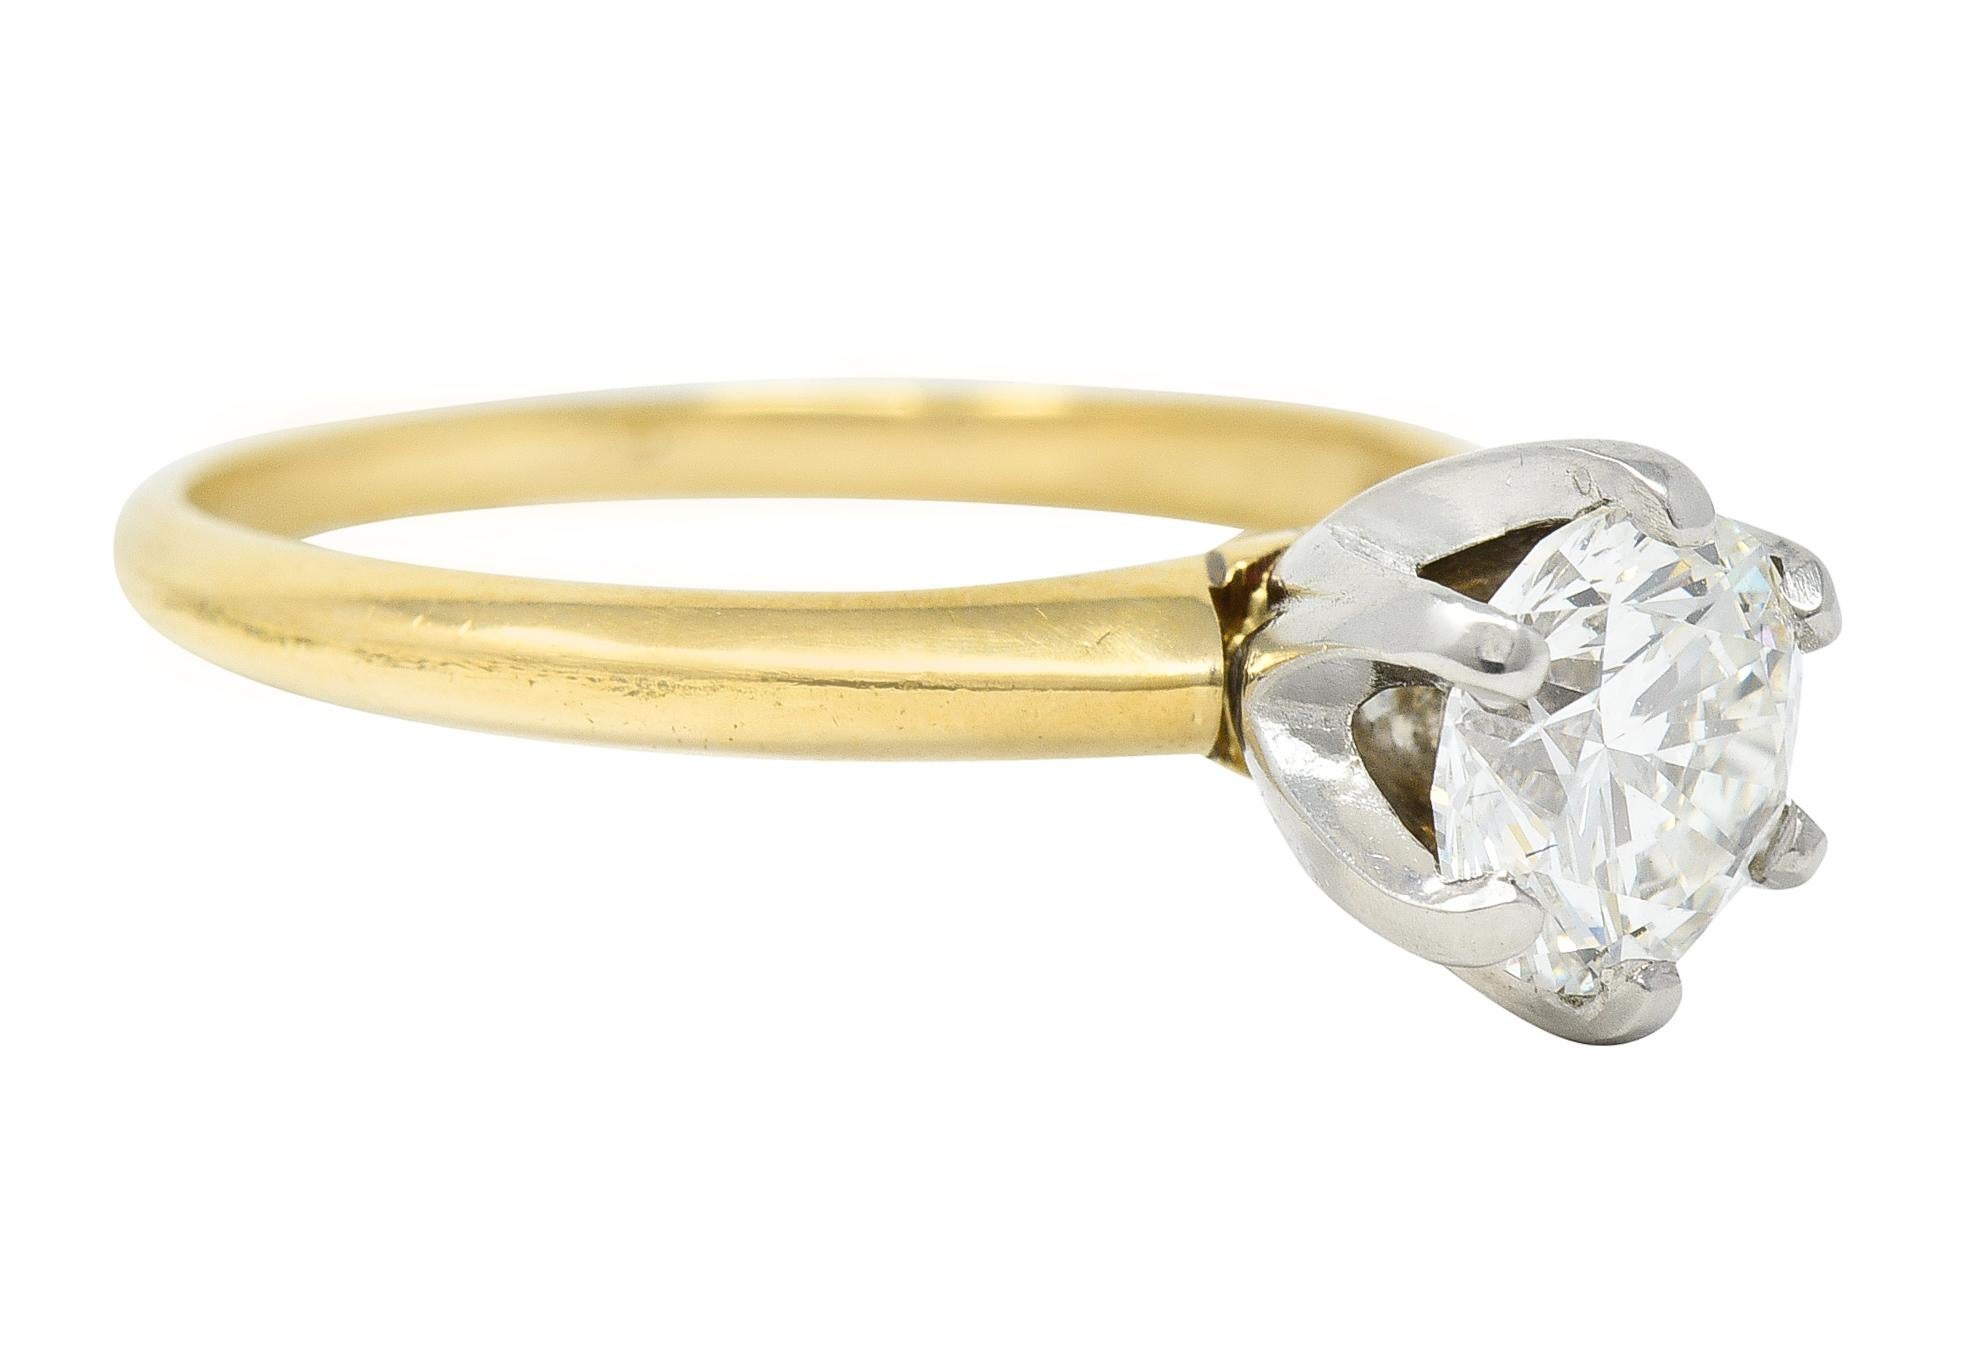 Au centre, un diamant rond de taille brillant pesant 1,02 carat - couleur H et pureté VS1. Serti dans une monture classique Tiffany en platine à six griffes. La tige est ornée d'une subtile lame de couteau en or jaune. Estampillé pour le platine et